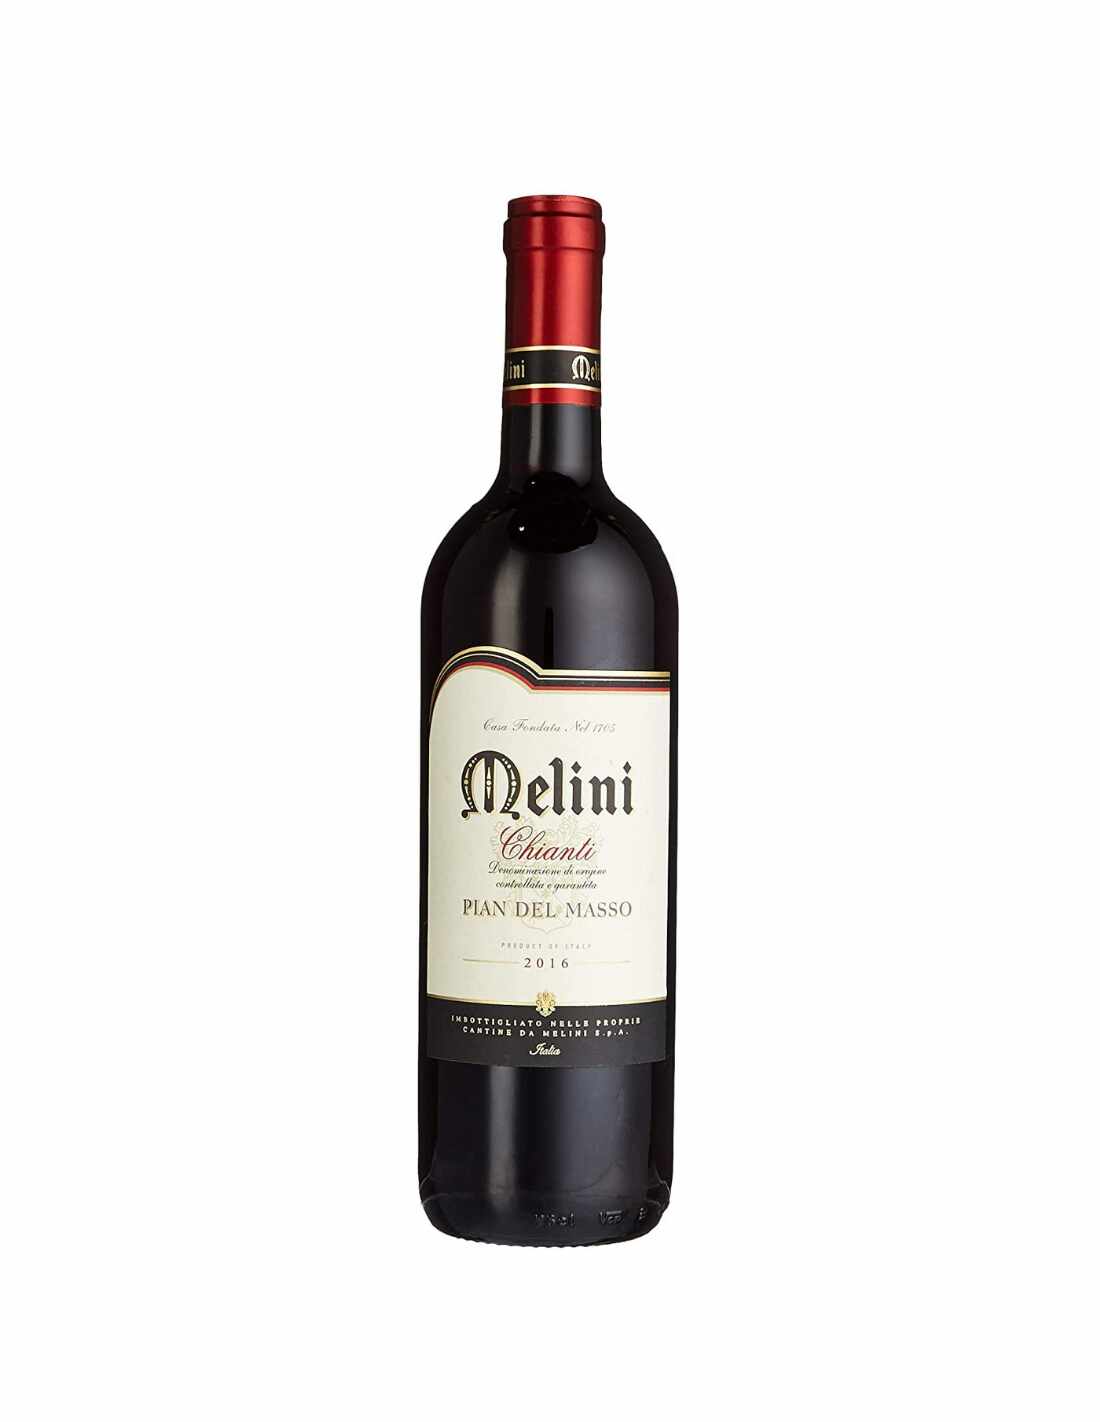 Vin rosu sec, Melini Chianti Pian del Masso 2016, 0.75L, 13% alc., Italia